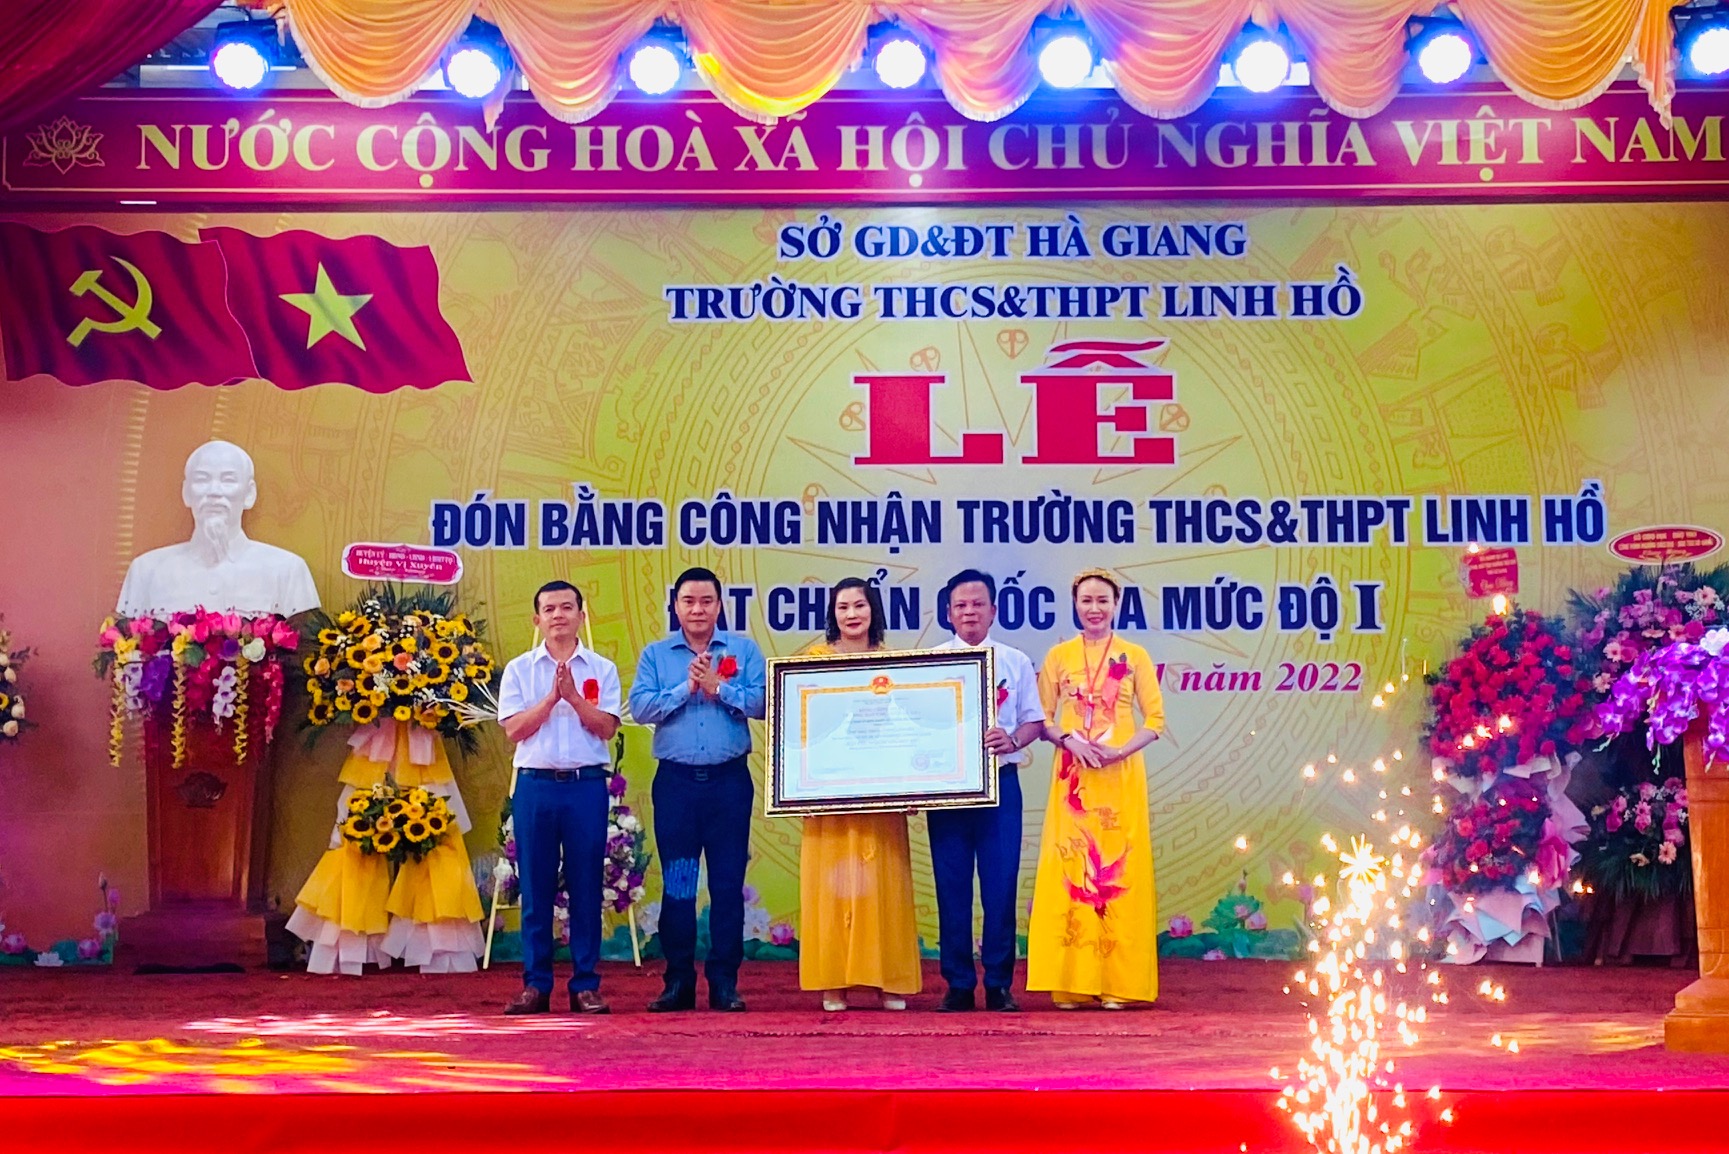 Lễ công nhận Trường THCS&THPT Linh Hồ đạt chuẩn Quốc gia cấp độ I